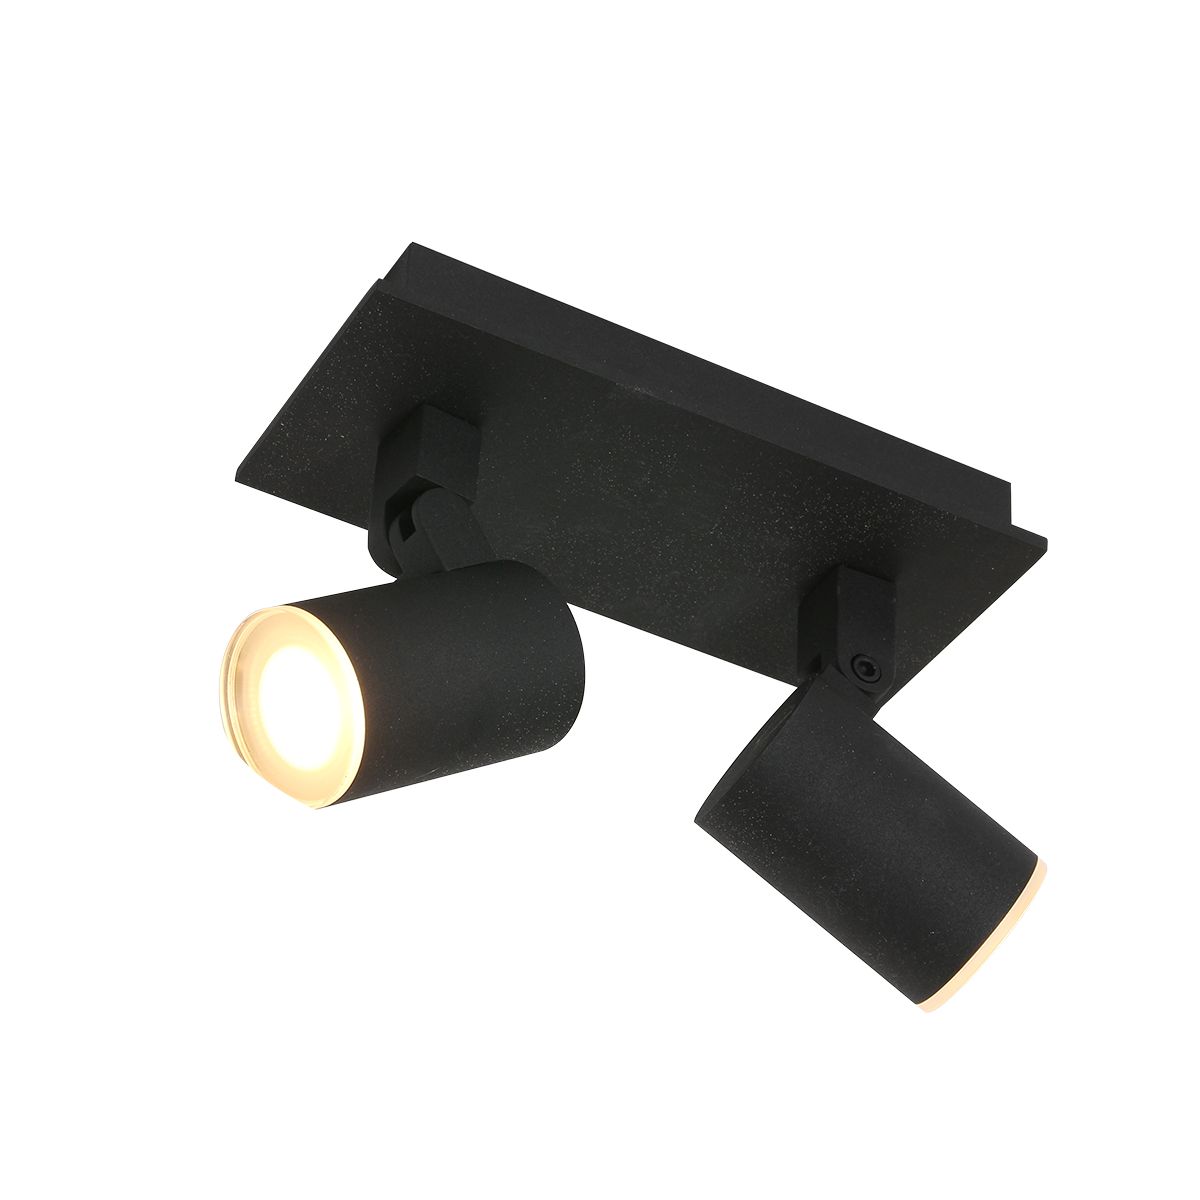 Noir - Spotlampe i sort metal, vælg mellem 4 størrelser 2 skærme